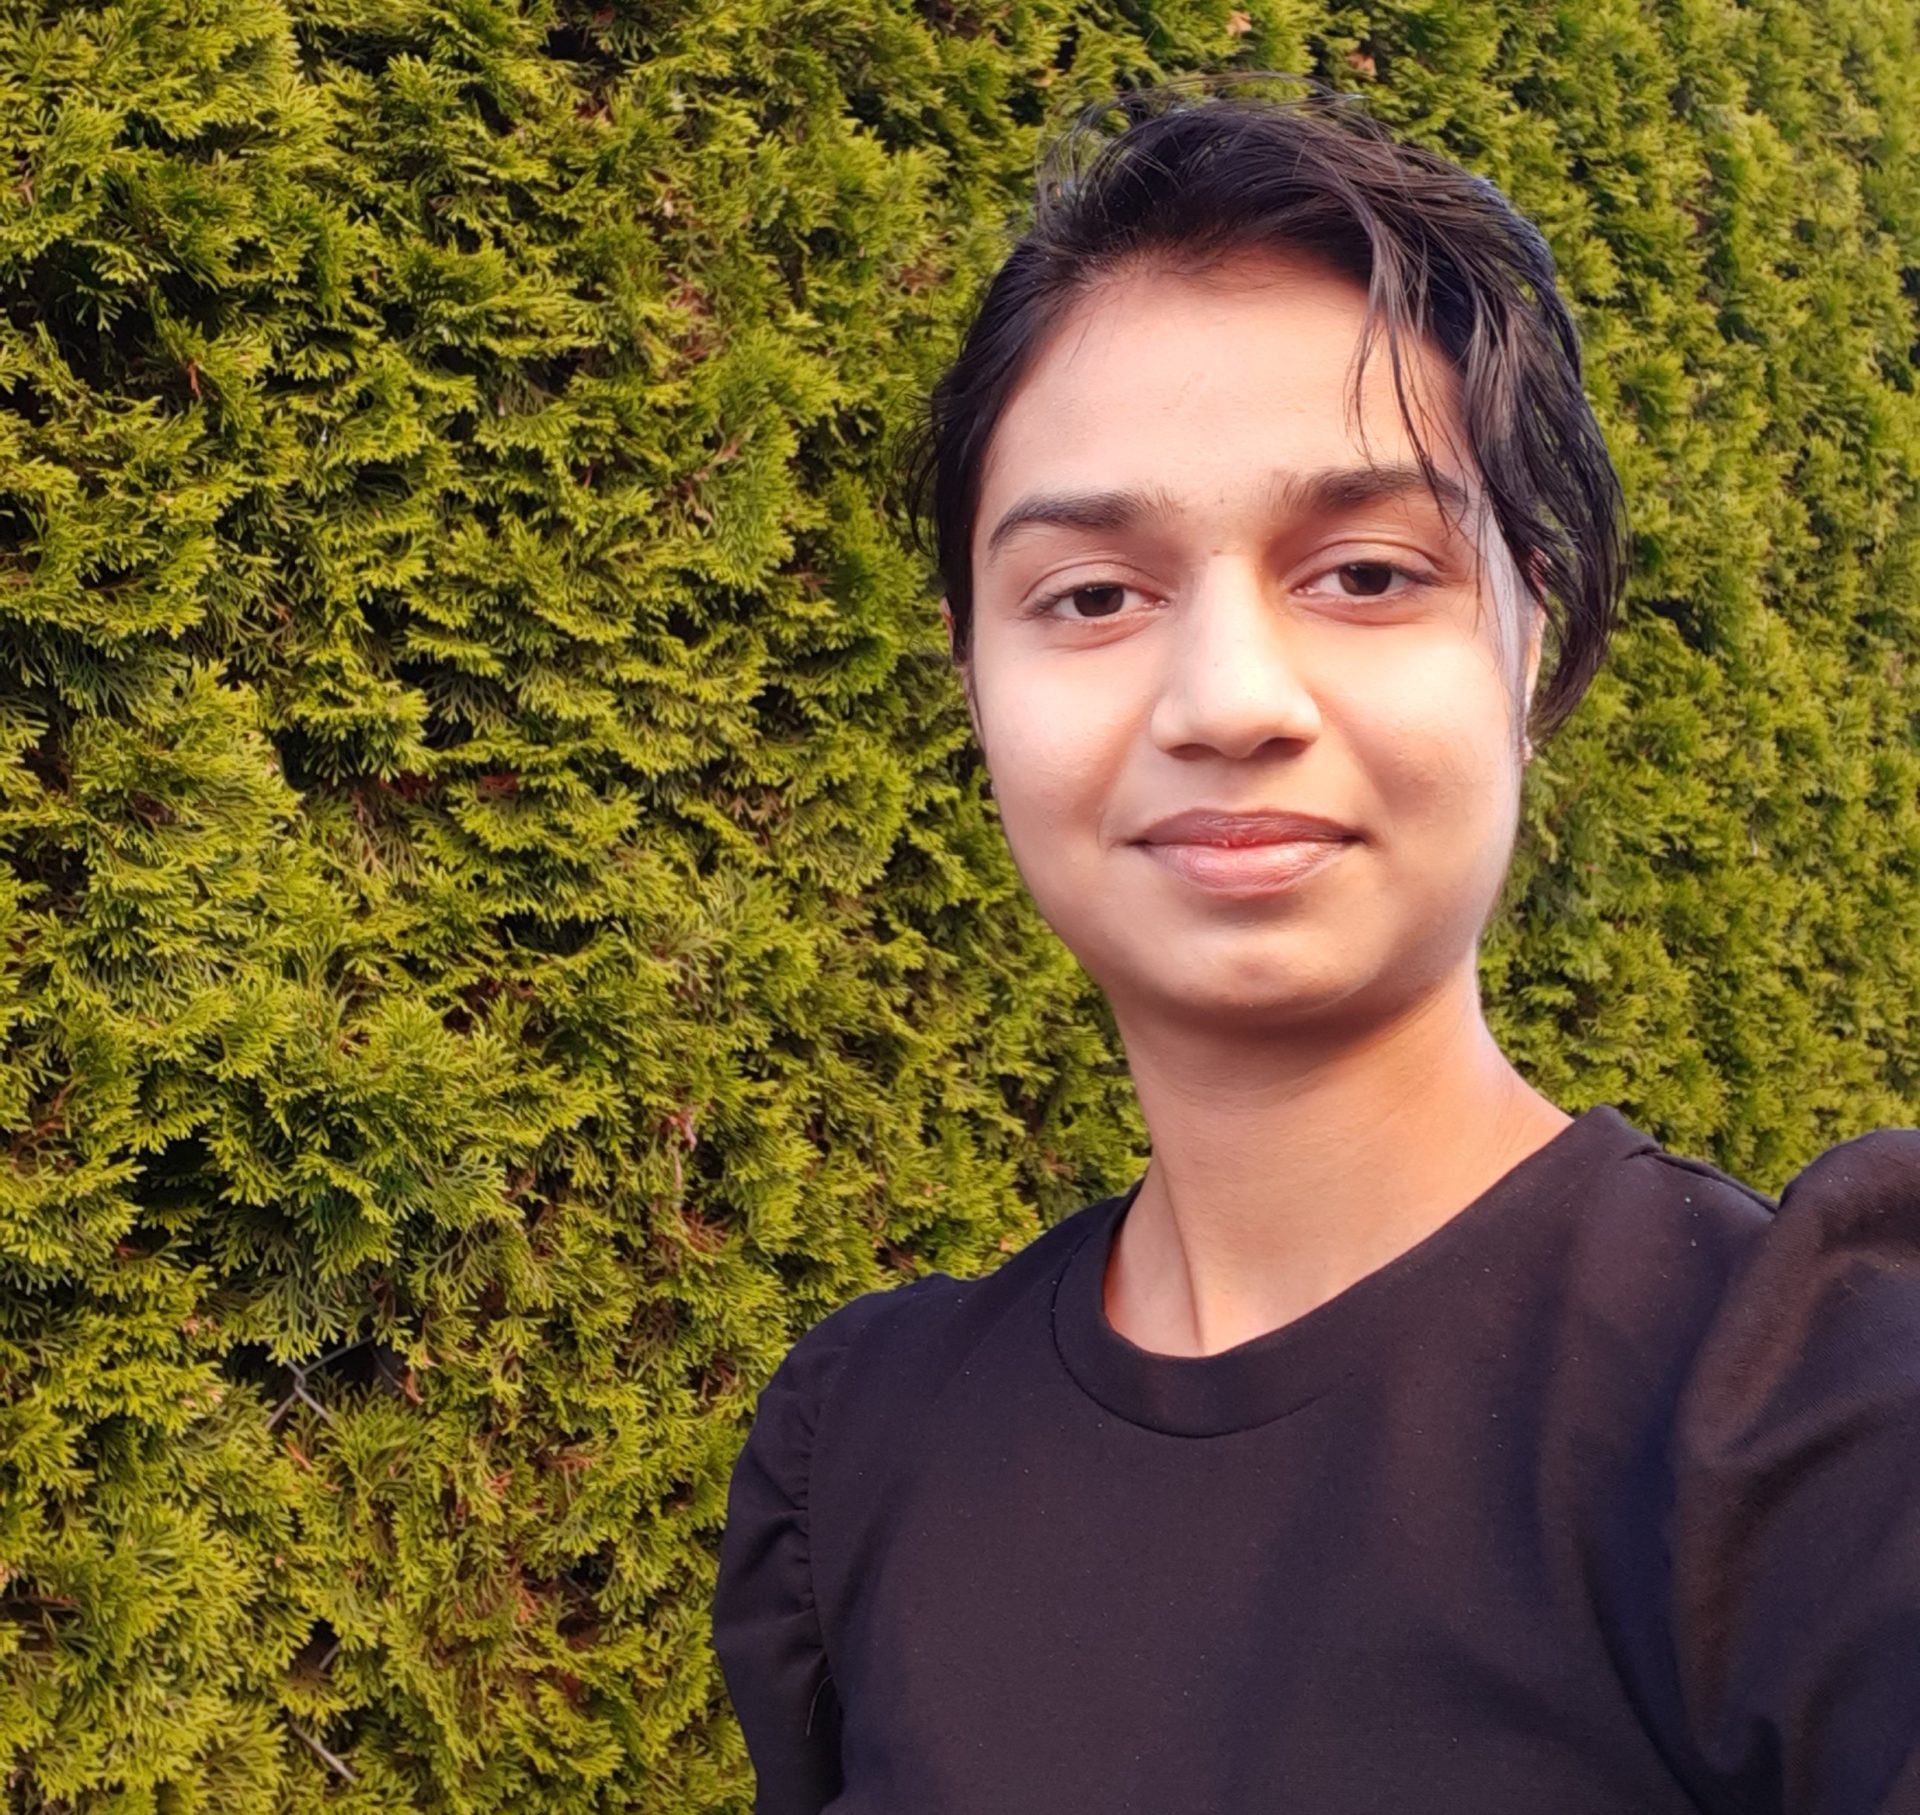 Selfie en plein air de Pallavi G. portant un t-shirt avec du feuillage en arrière-plan.